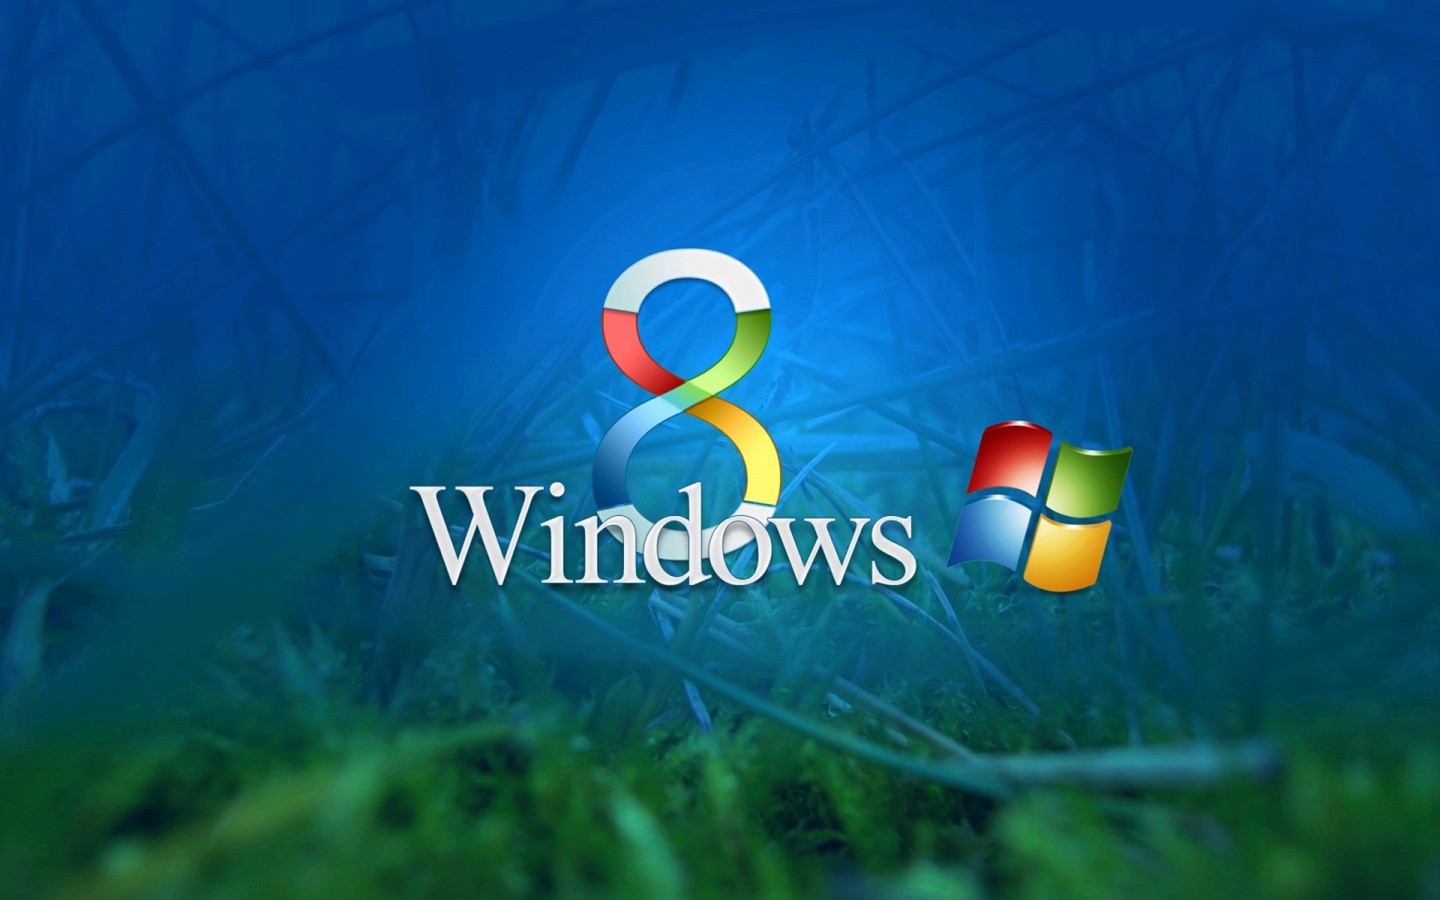 Windows Colors Wallpaper Desktop Background In